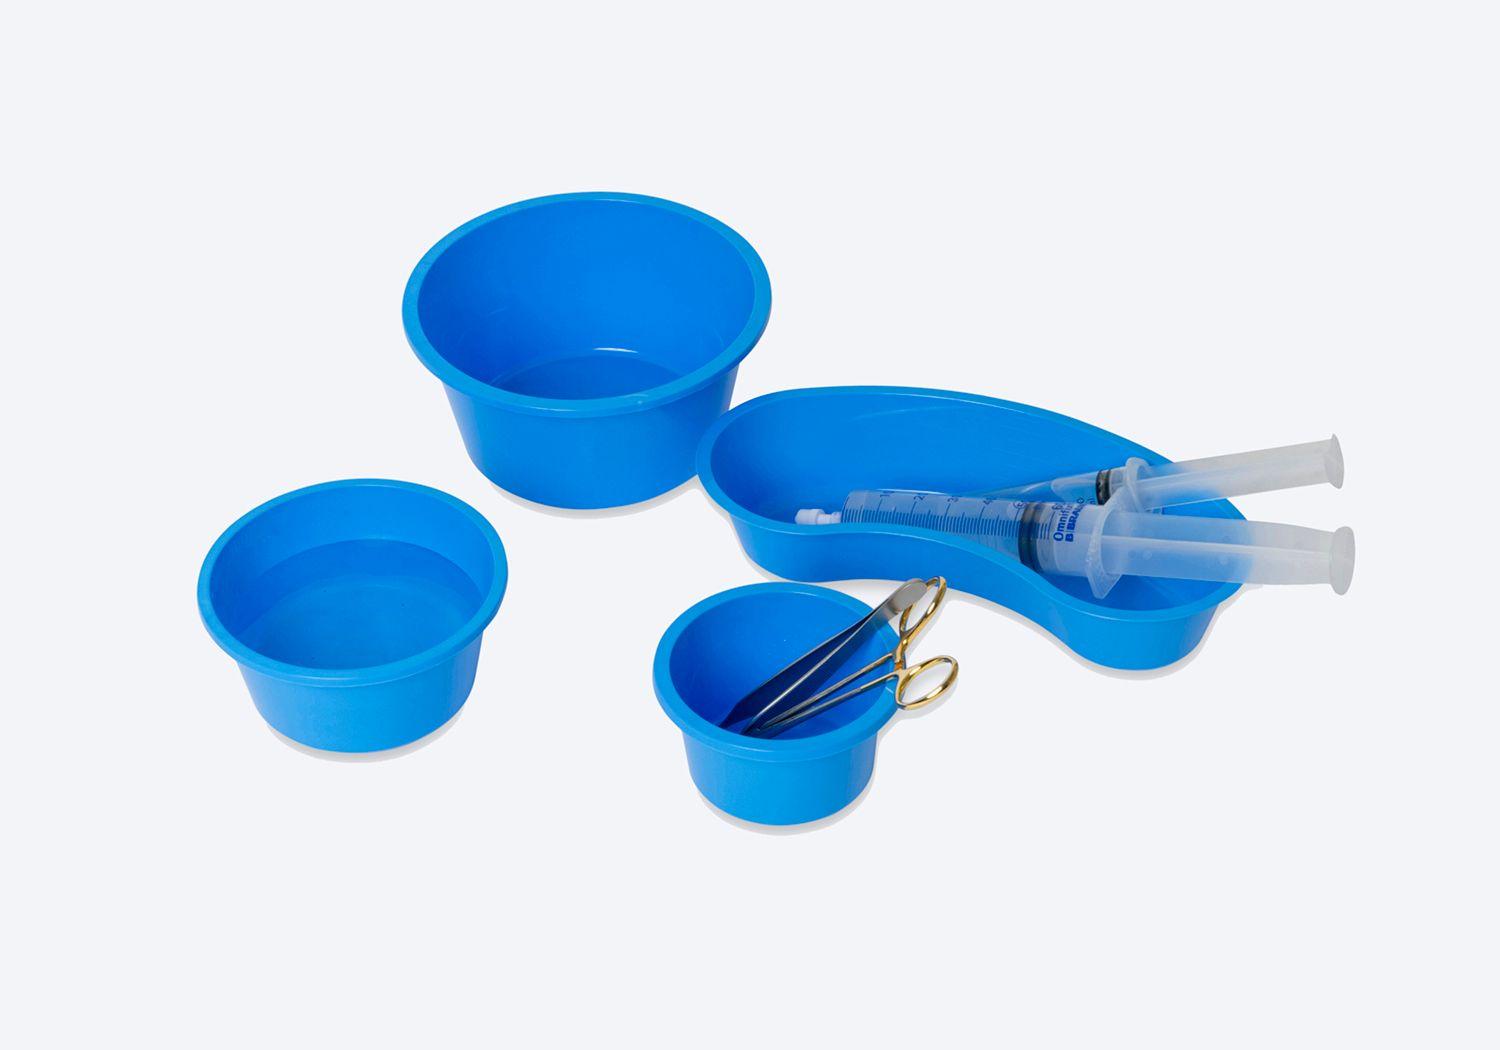 Tre blå, runda skålar med saxar och pincetter, och en blå oval skål med sprutor.